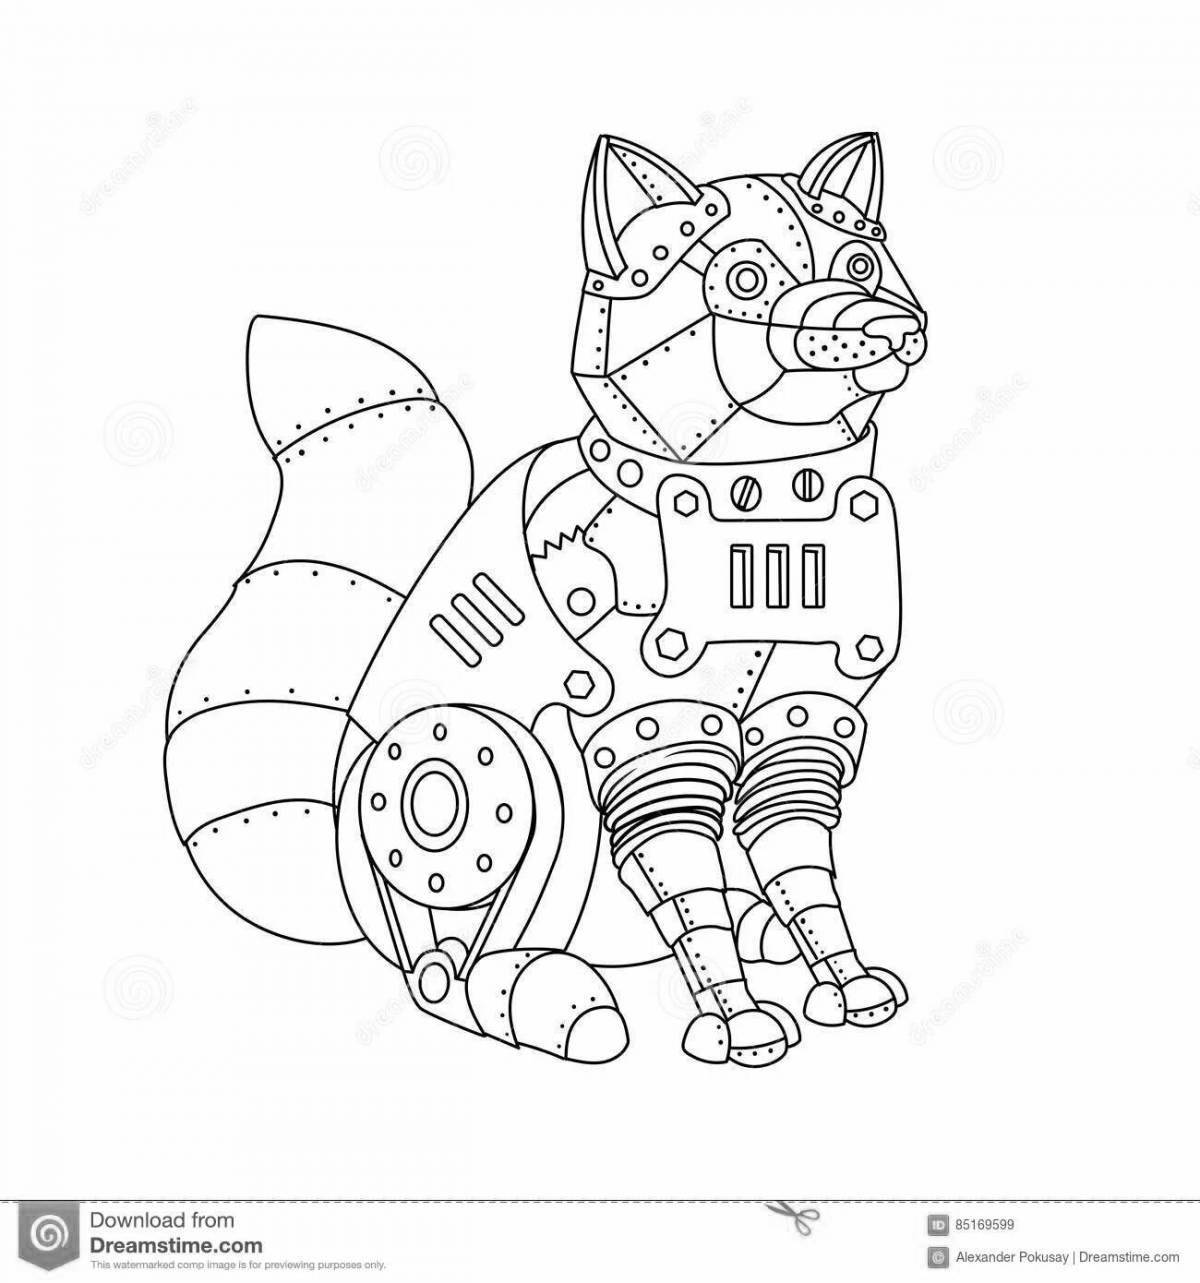 Потрясающая страница-раскраска робот-кошка